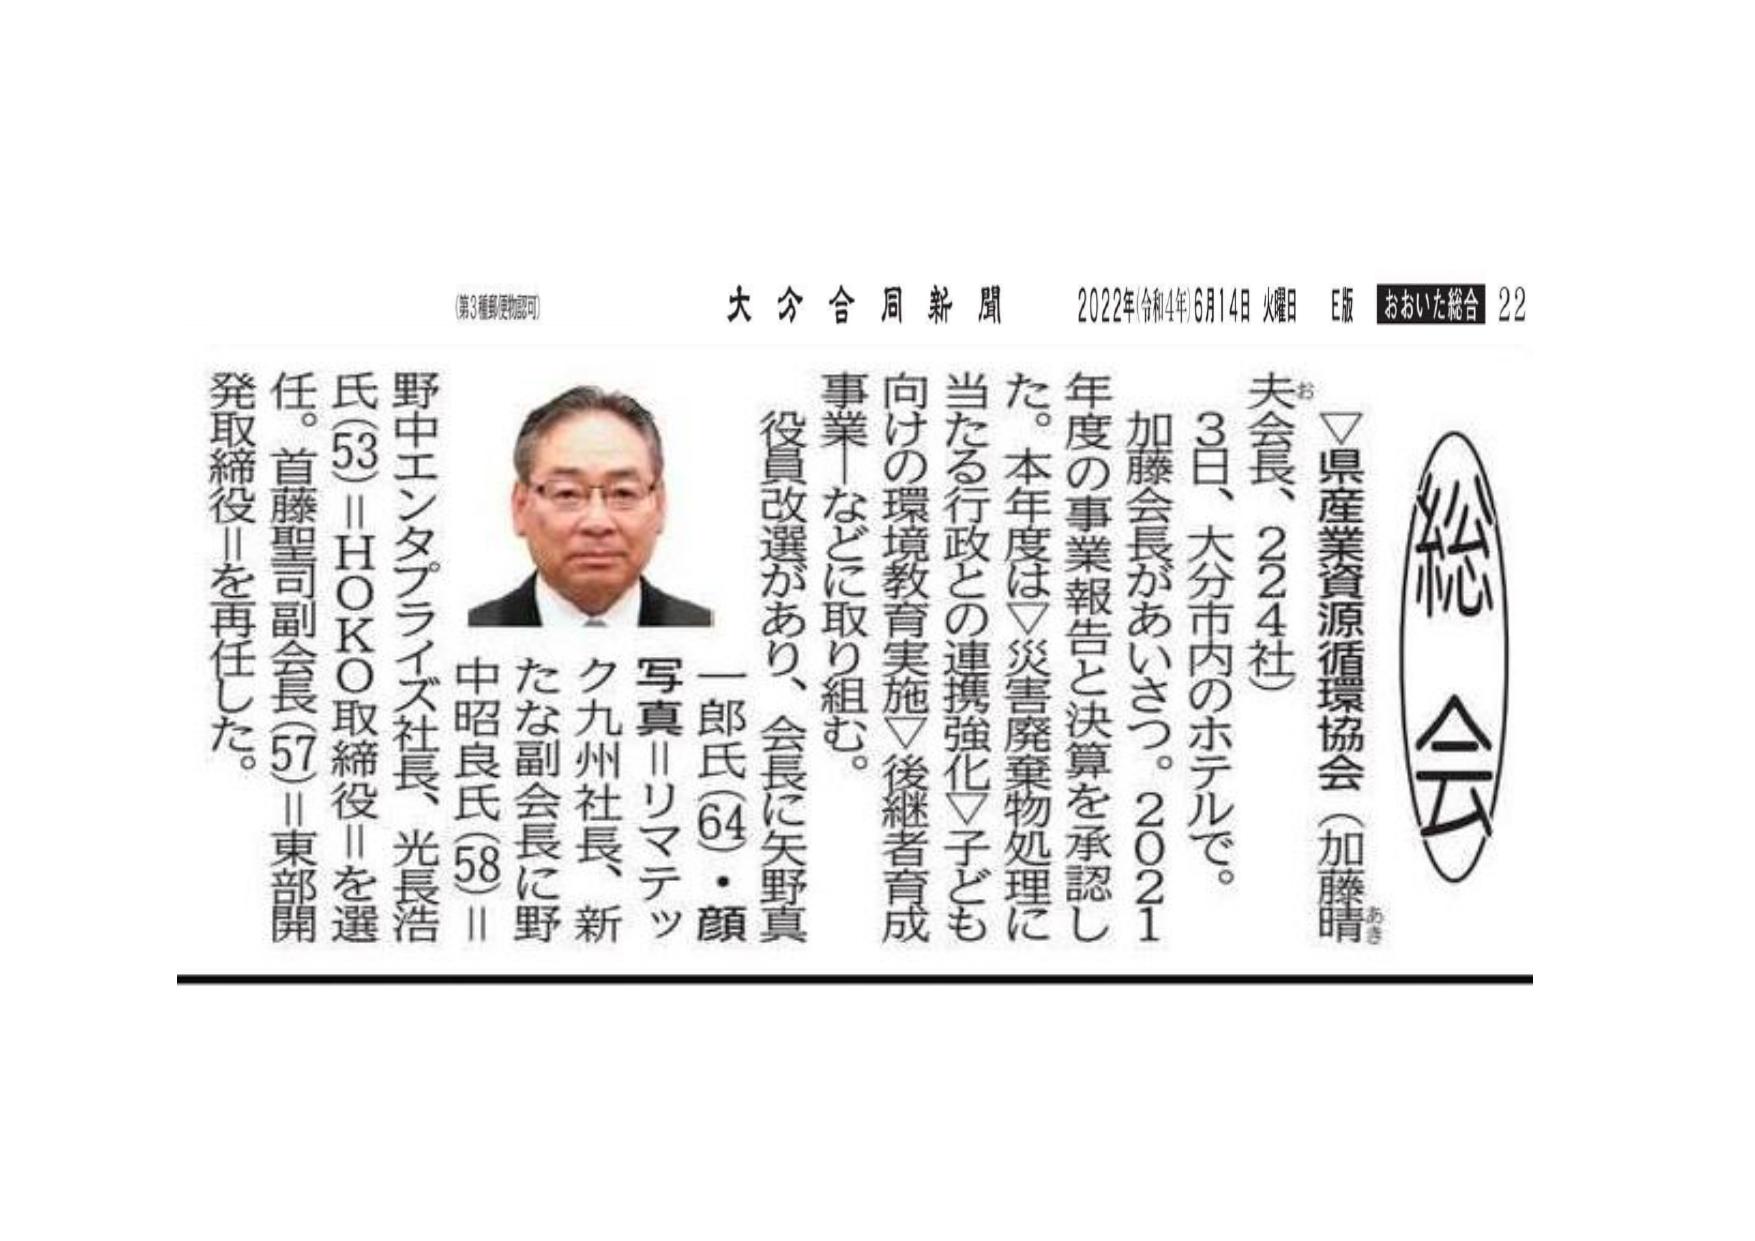 弊社代表取締役 矢野 真一郎が「大分県産業資源循環協会」の会長に就任致しましたの写真2